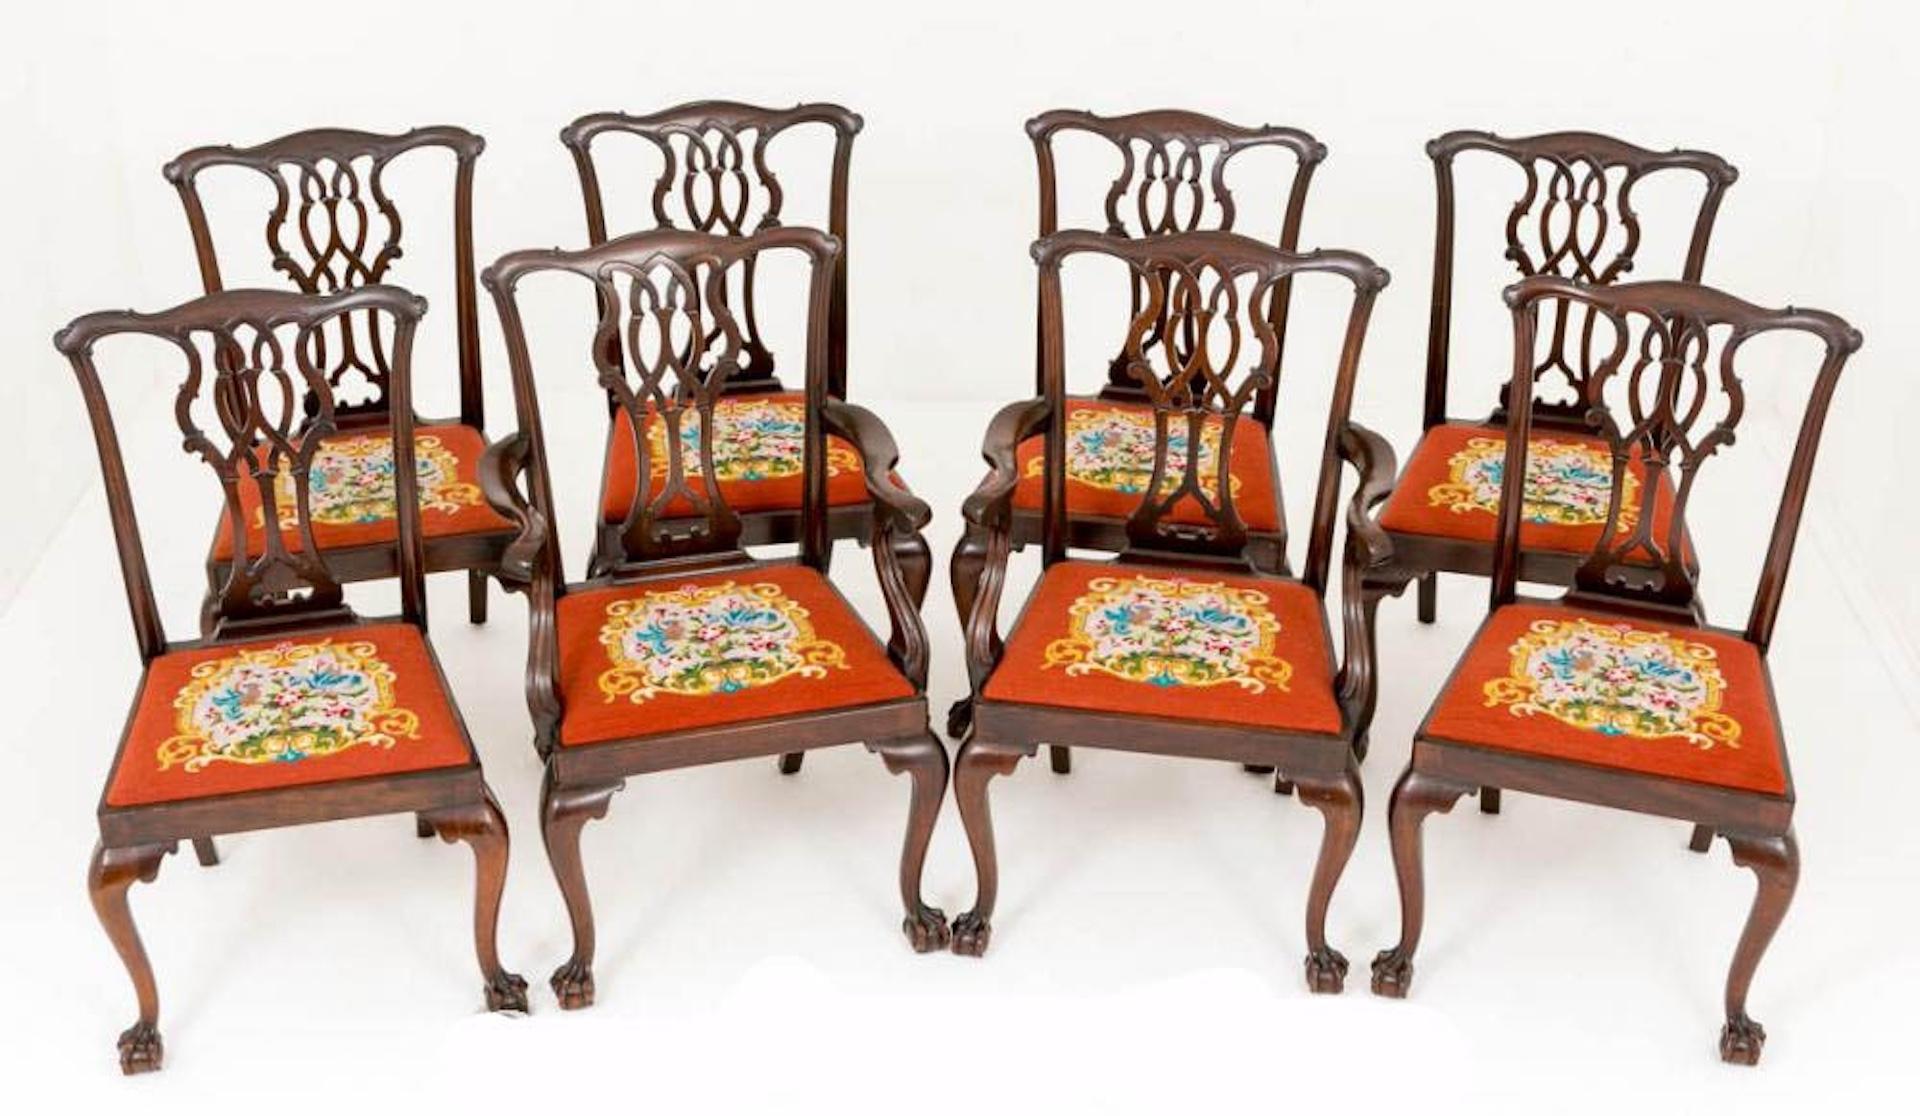 Guter Satz von 8 (6+2) Mahagoni Chippendale Stil Esszimmerstühle.
CIRCA 1890
Jeder Stuhl steht auf geschwungenen Beinen mit kühn geschnitzten Kugel- und Krallenfüßen.
Diese Stühle behalten ihre originalen, ausklappbaren, handgearbeiteten Sitze. Die